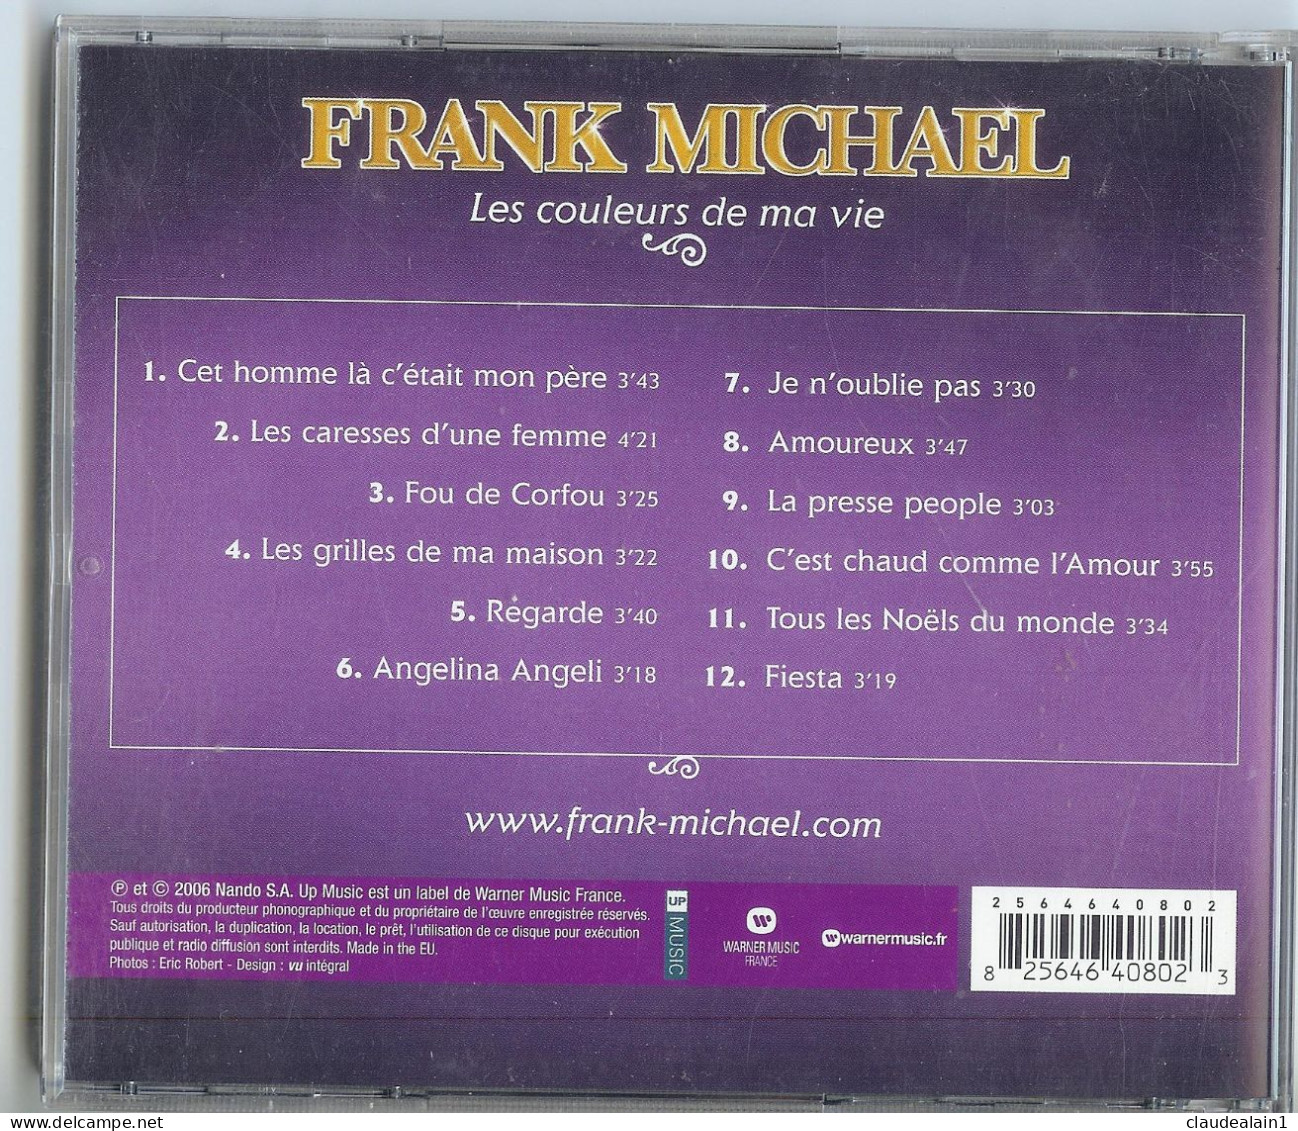 ALBUM CD FRANK MICHAEL - Les Couleurs De Ma Vie (12 Titres) - Très Bon état - Other - French Music